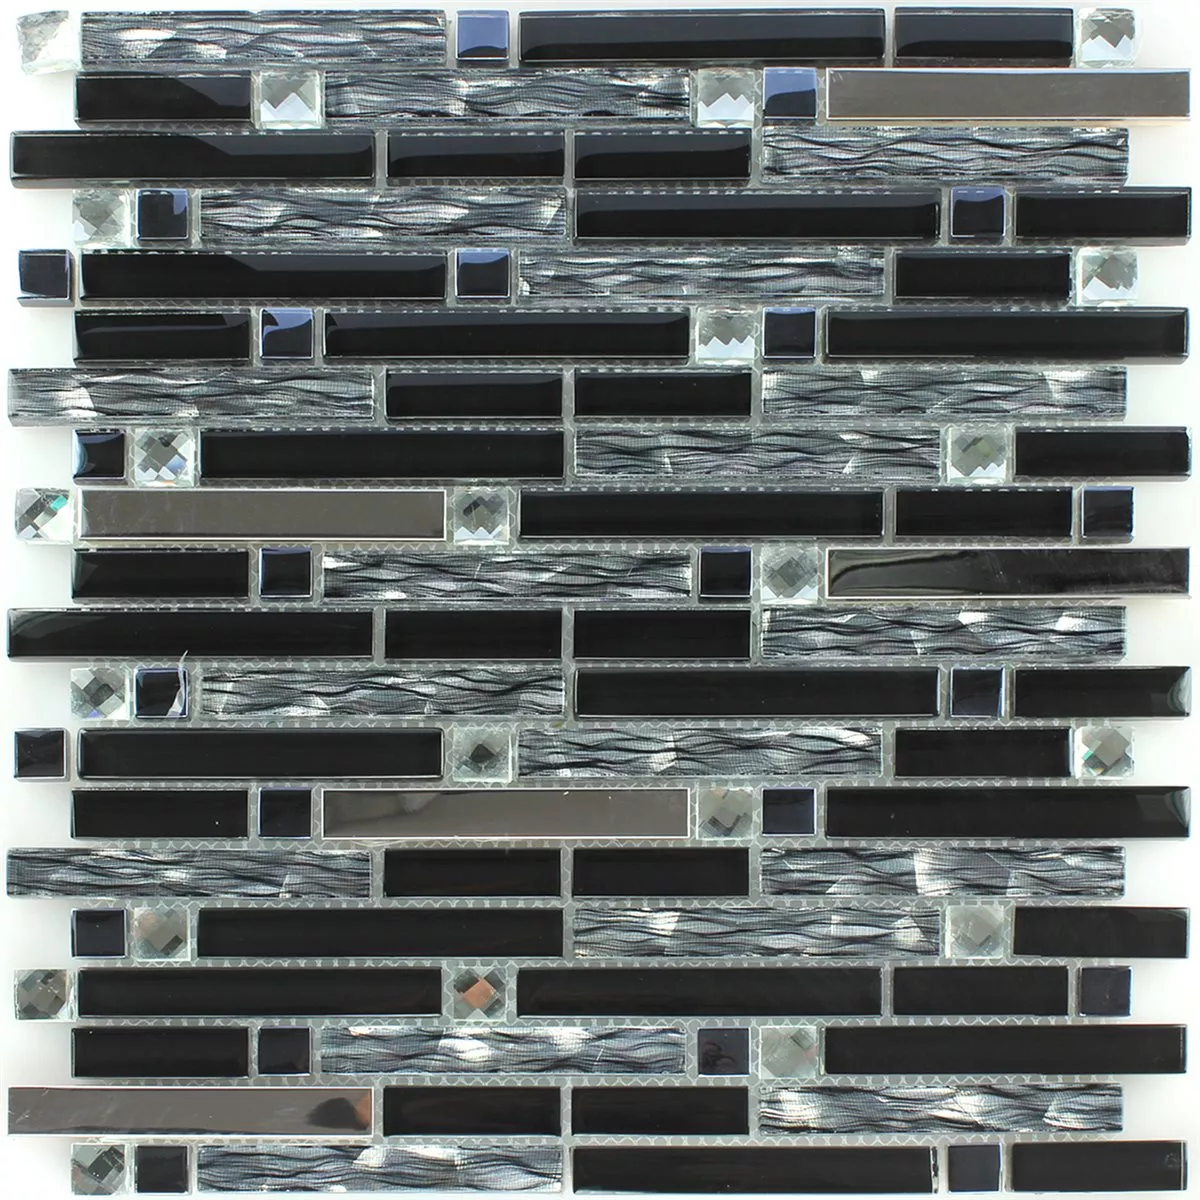 Sample Mosaic Tiles Stainless Steel Metal Black Mix